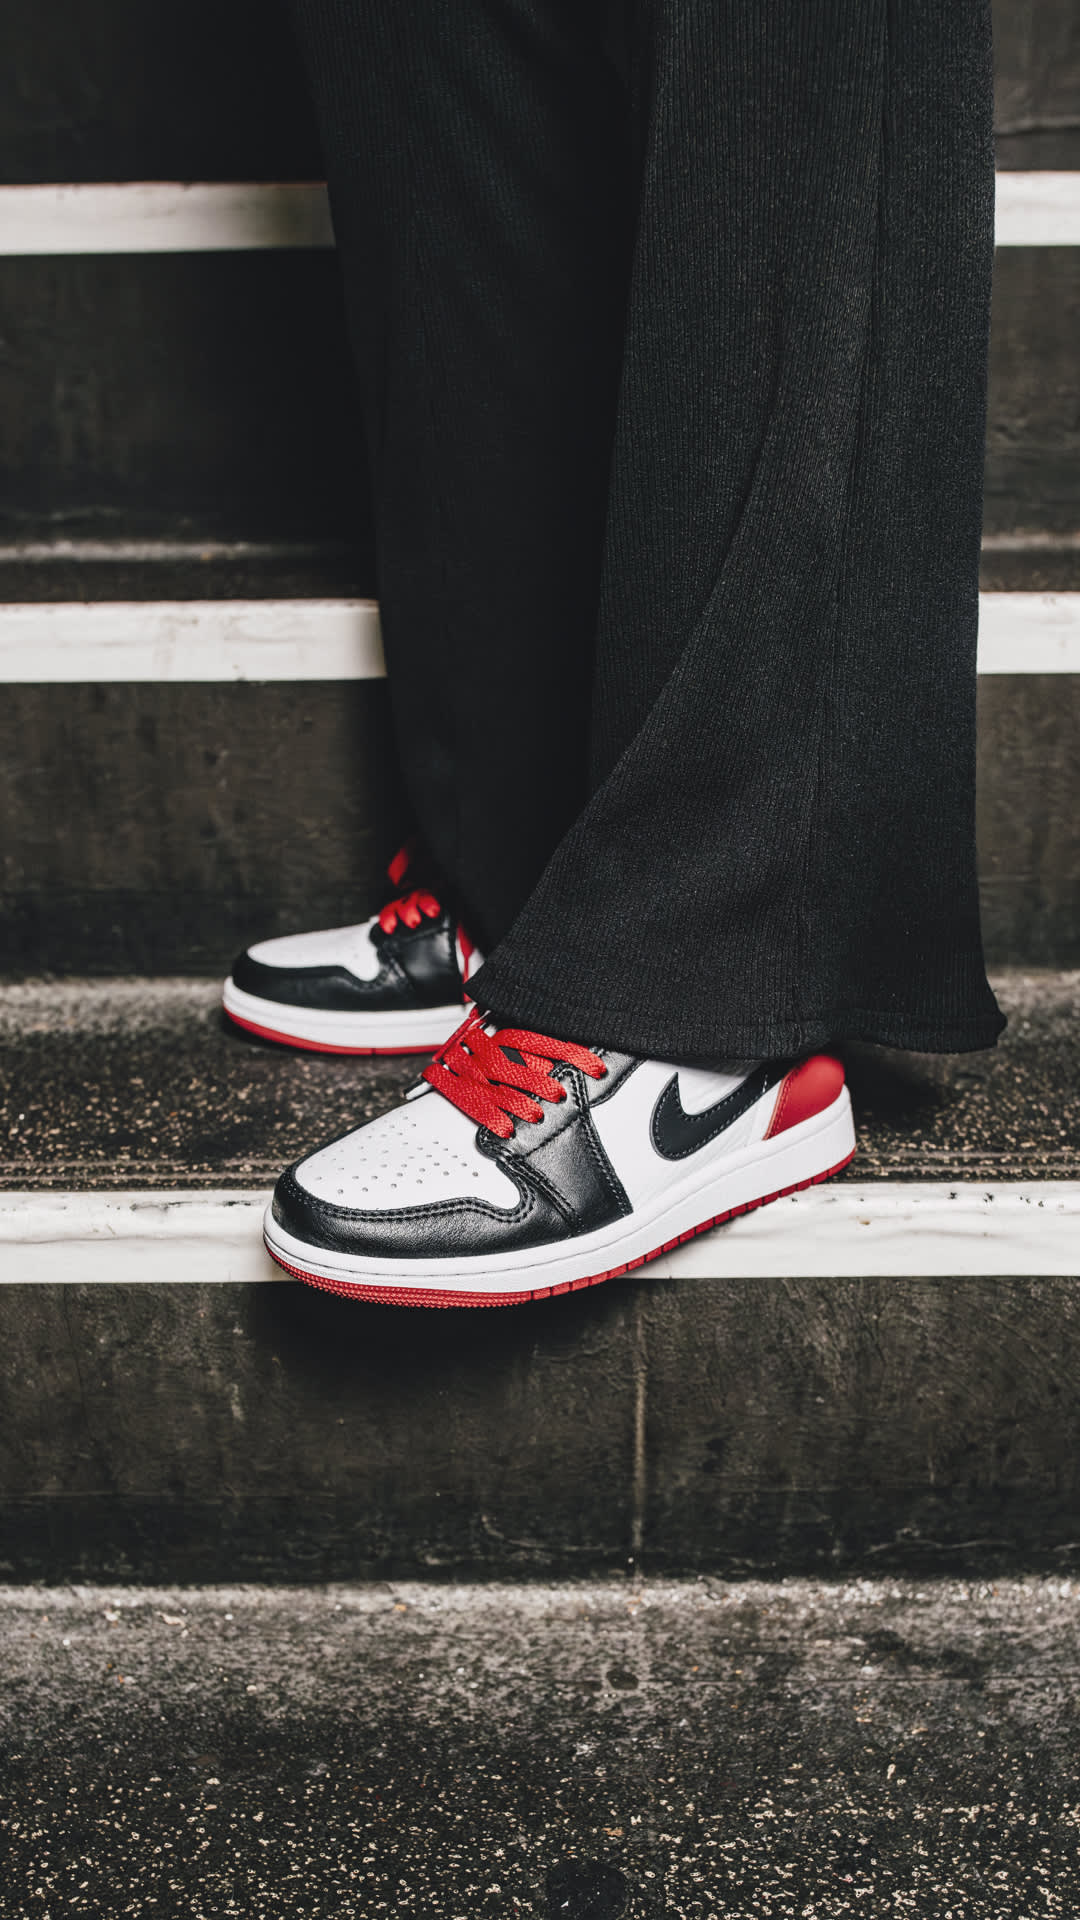 Nike Air Jordan 1 Retro Low “Black Toe”